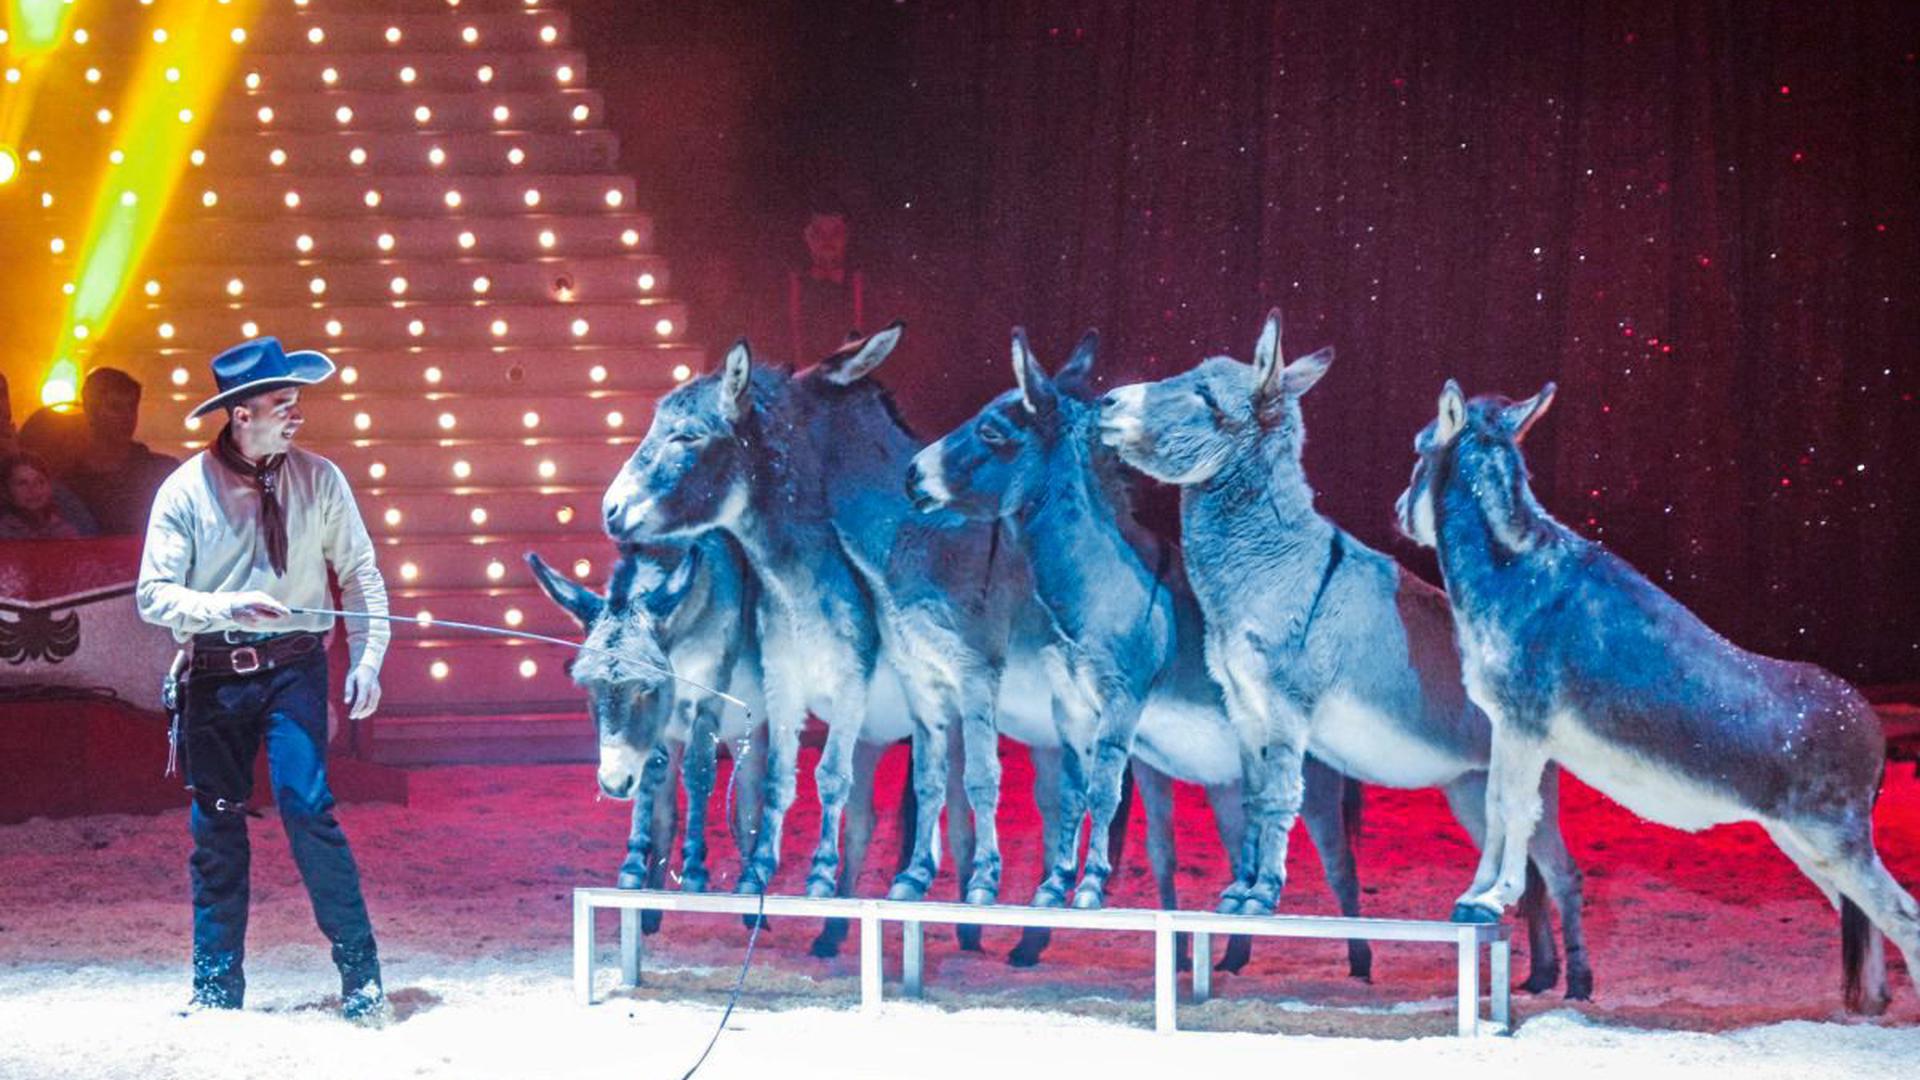 Ein tierisches Vergnügen erwartet den Gewinner oder die Gewinnerin des 35. Rätsels beim Weihnachtscircus in Karlsruhe.